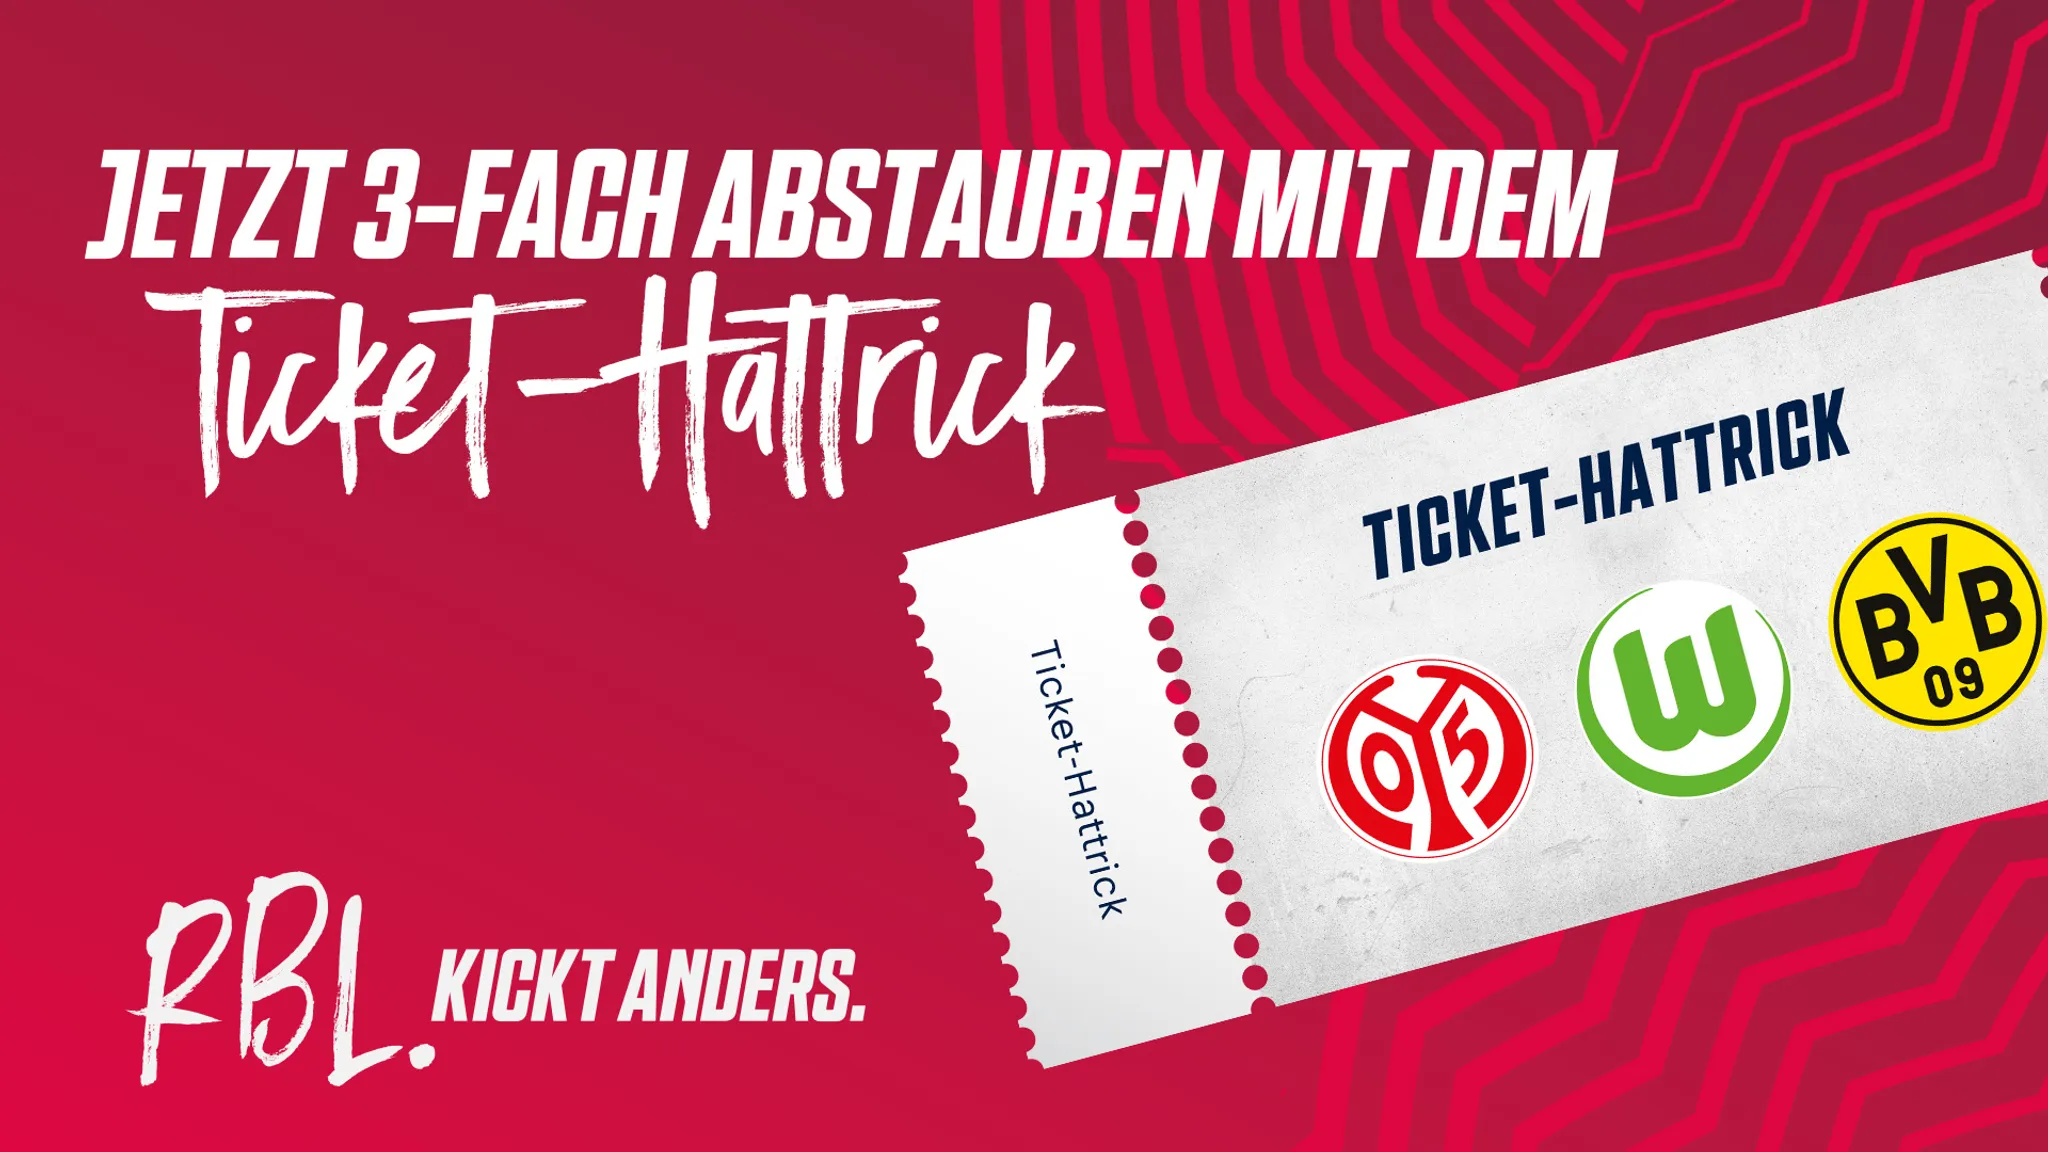 Ticket-Hattrick mit Borussia Dortmund sichern!